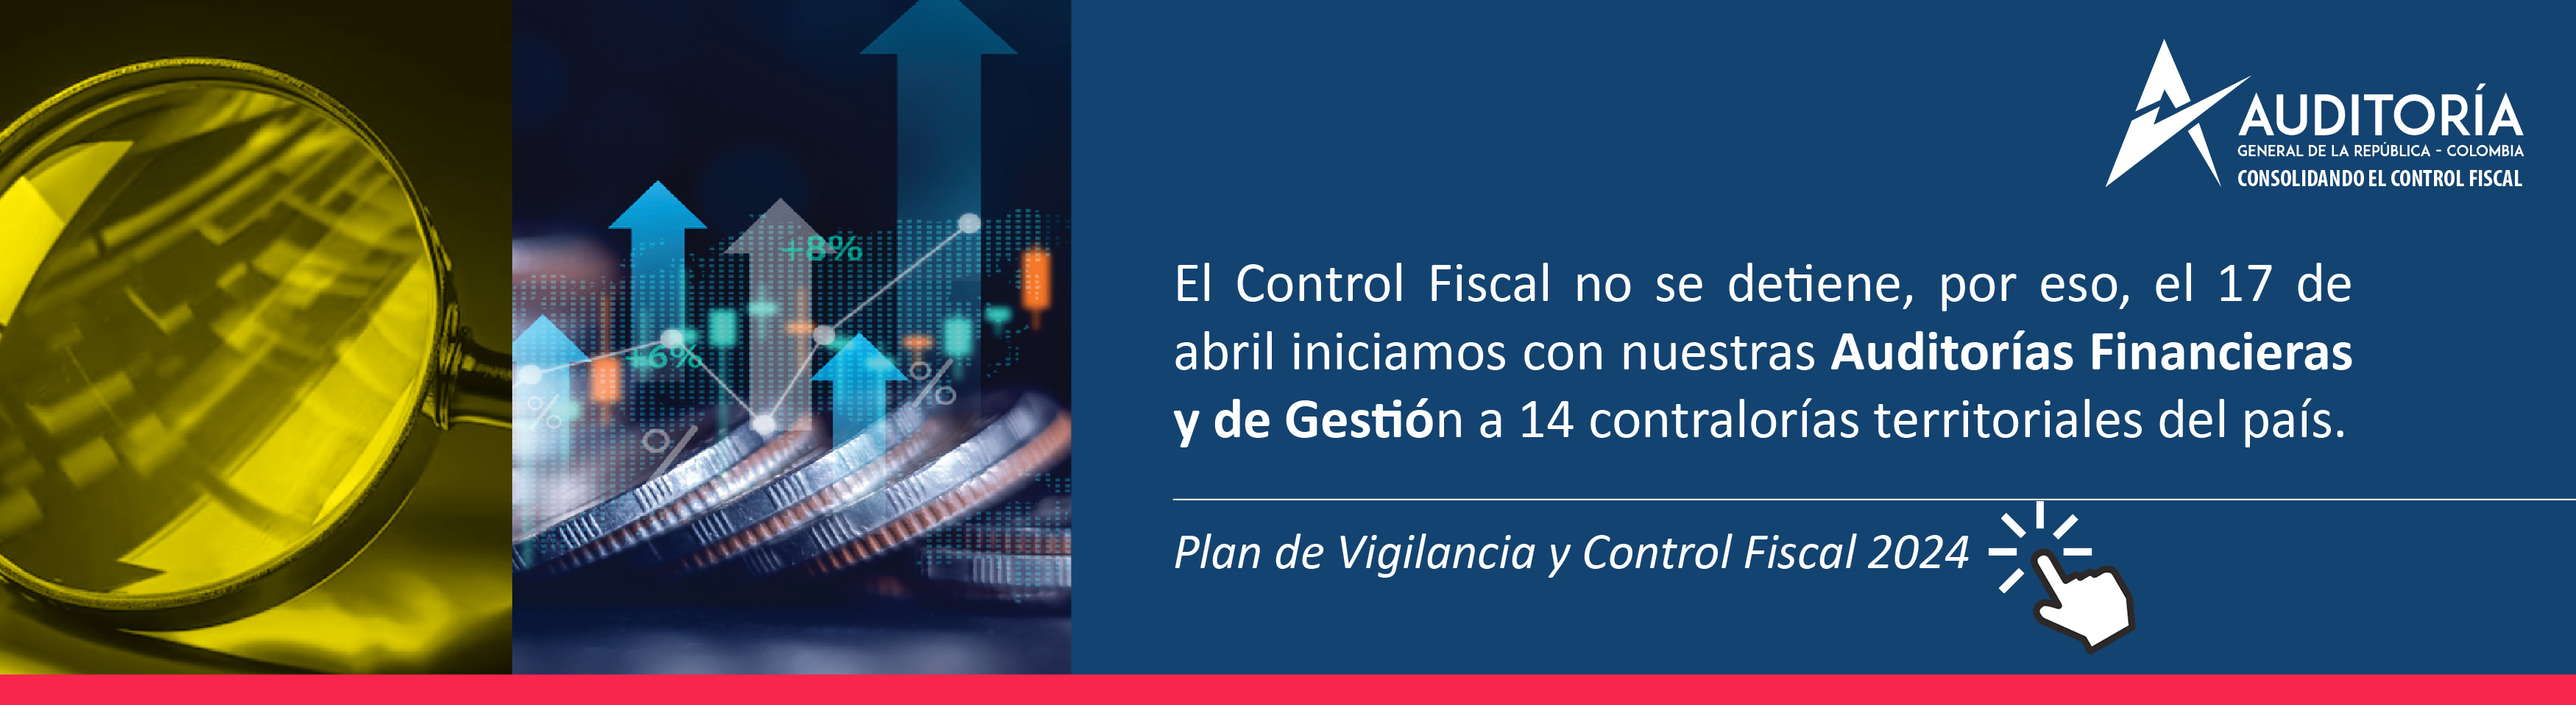 Plan de Vigilancia y Control Fiscal 2024 - Inicio auditorías financieras y de gestión abril-mayo